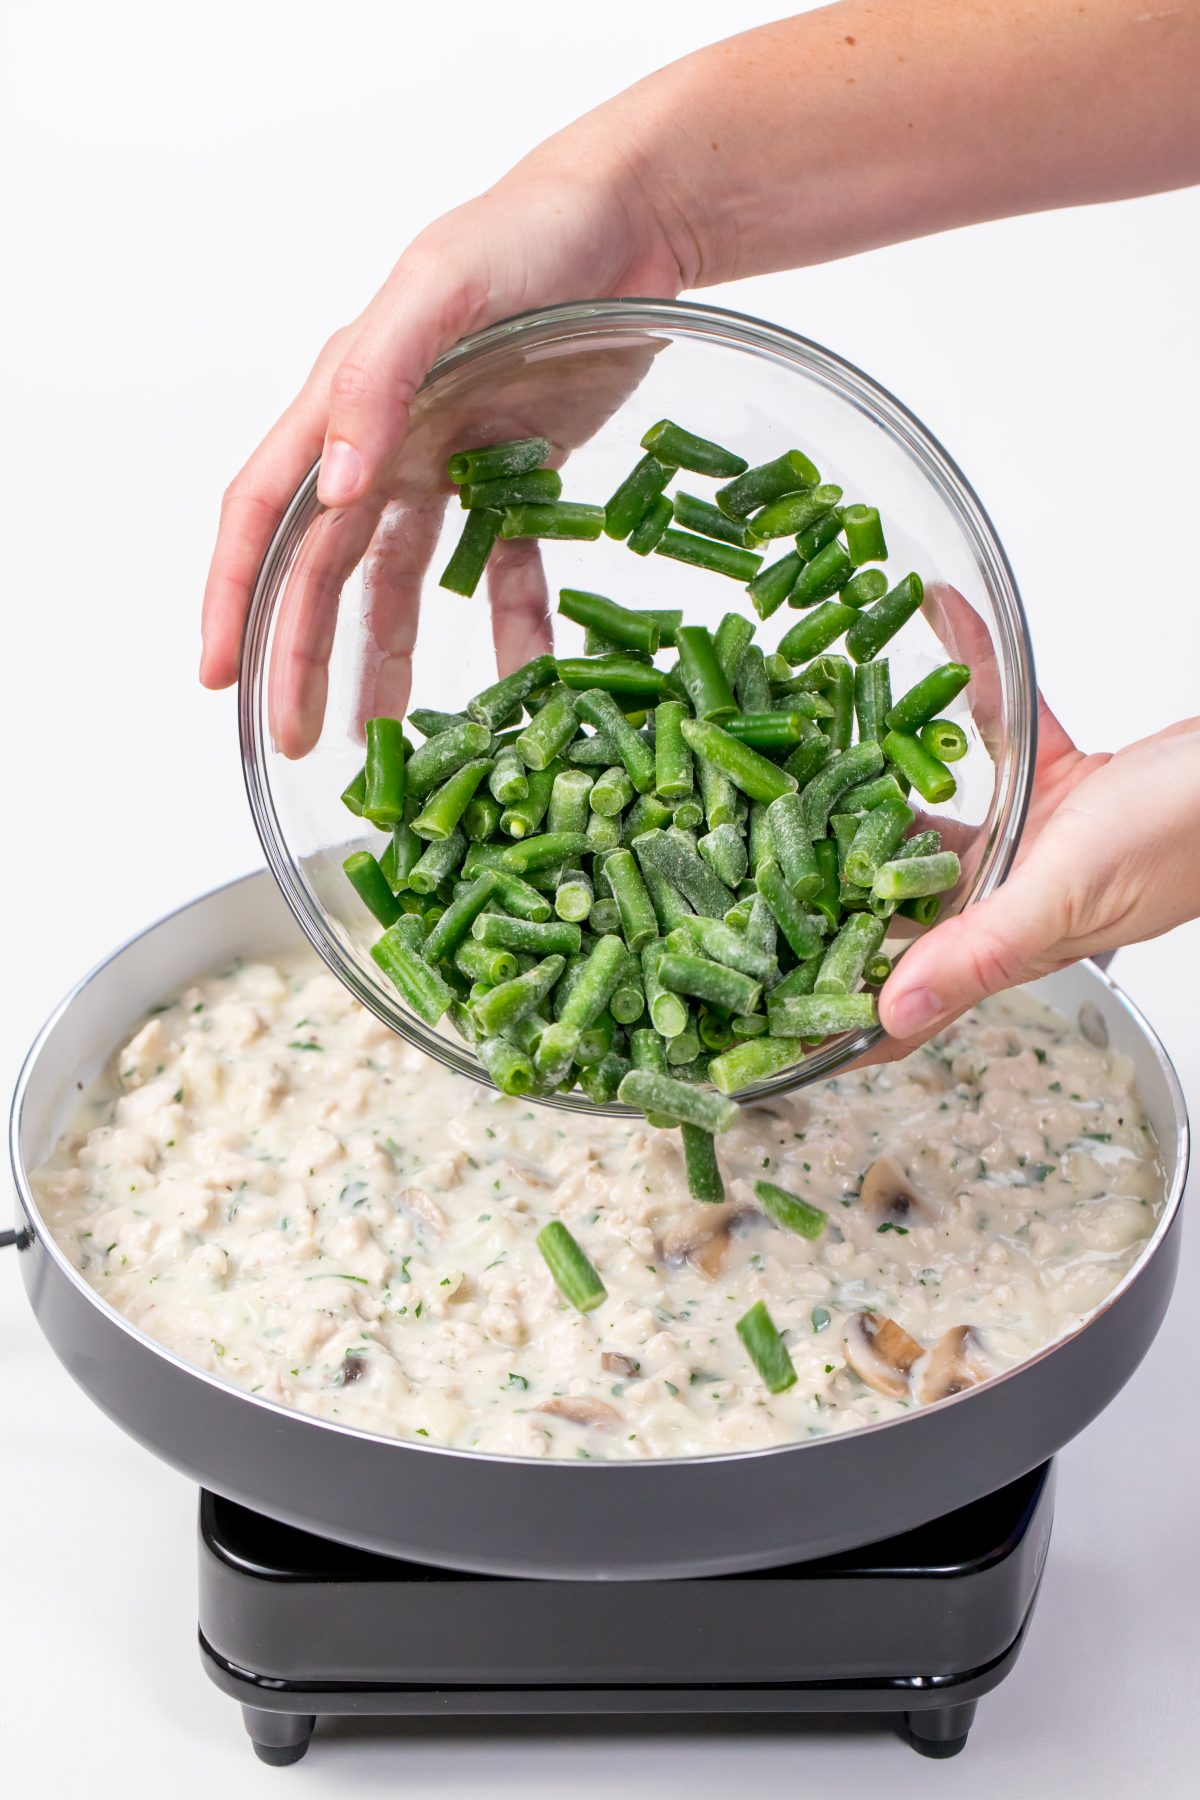 Add frozen green beans to mix